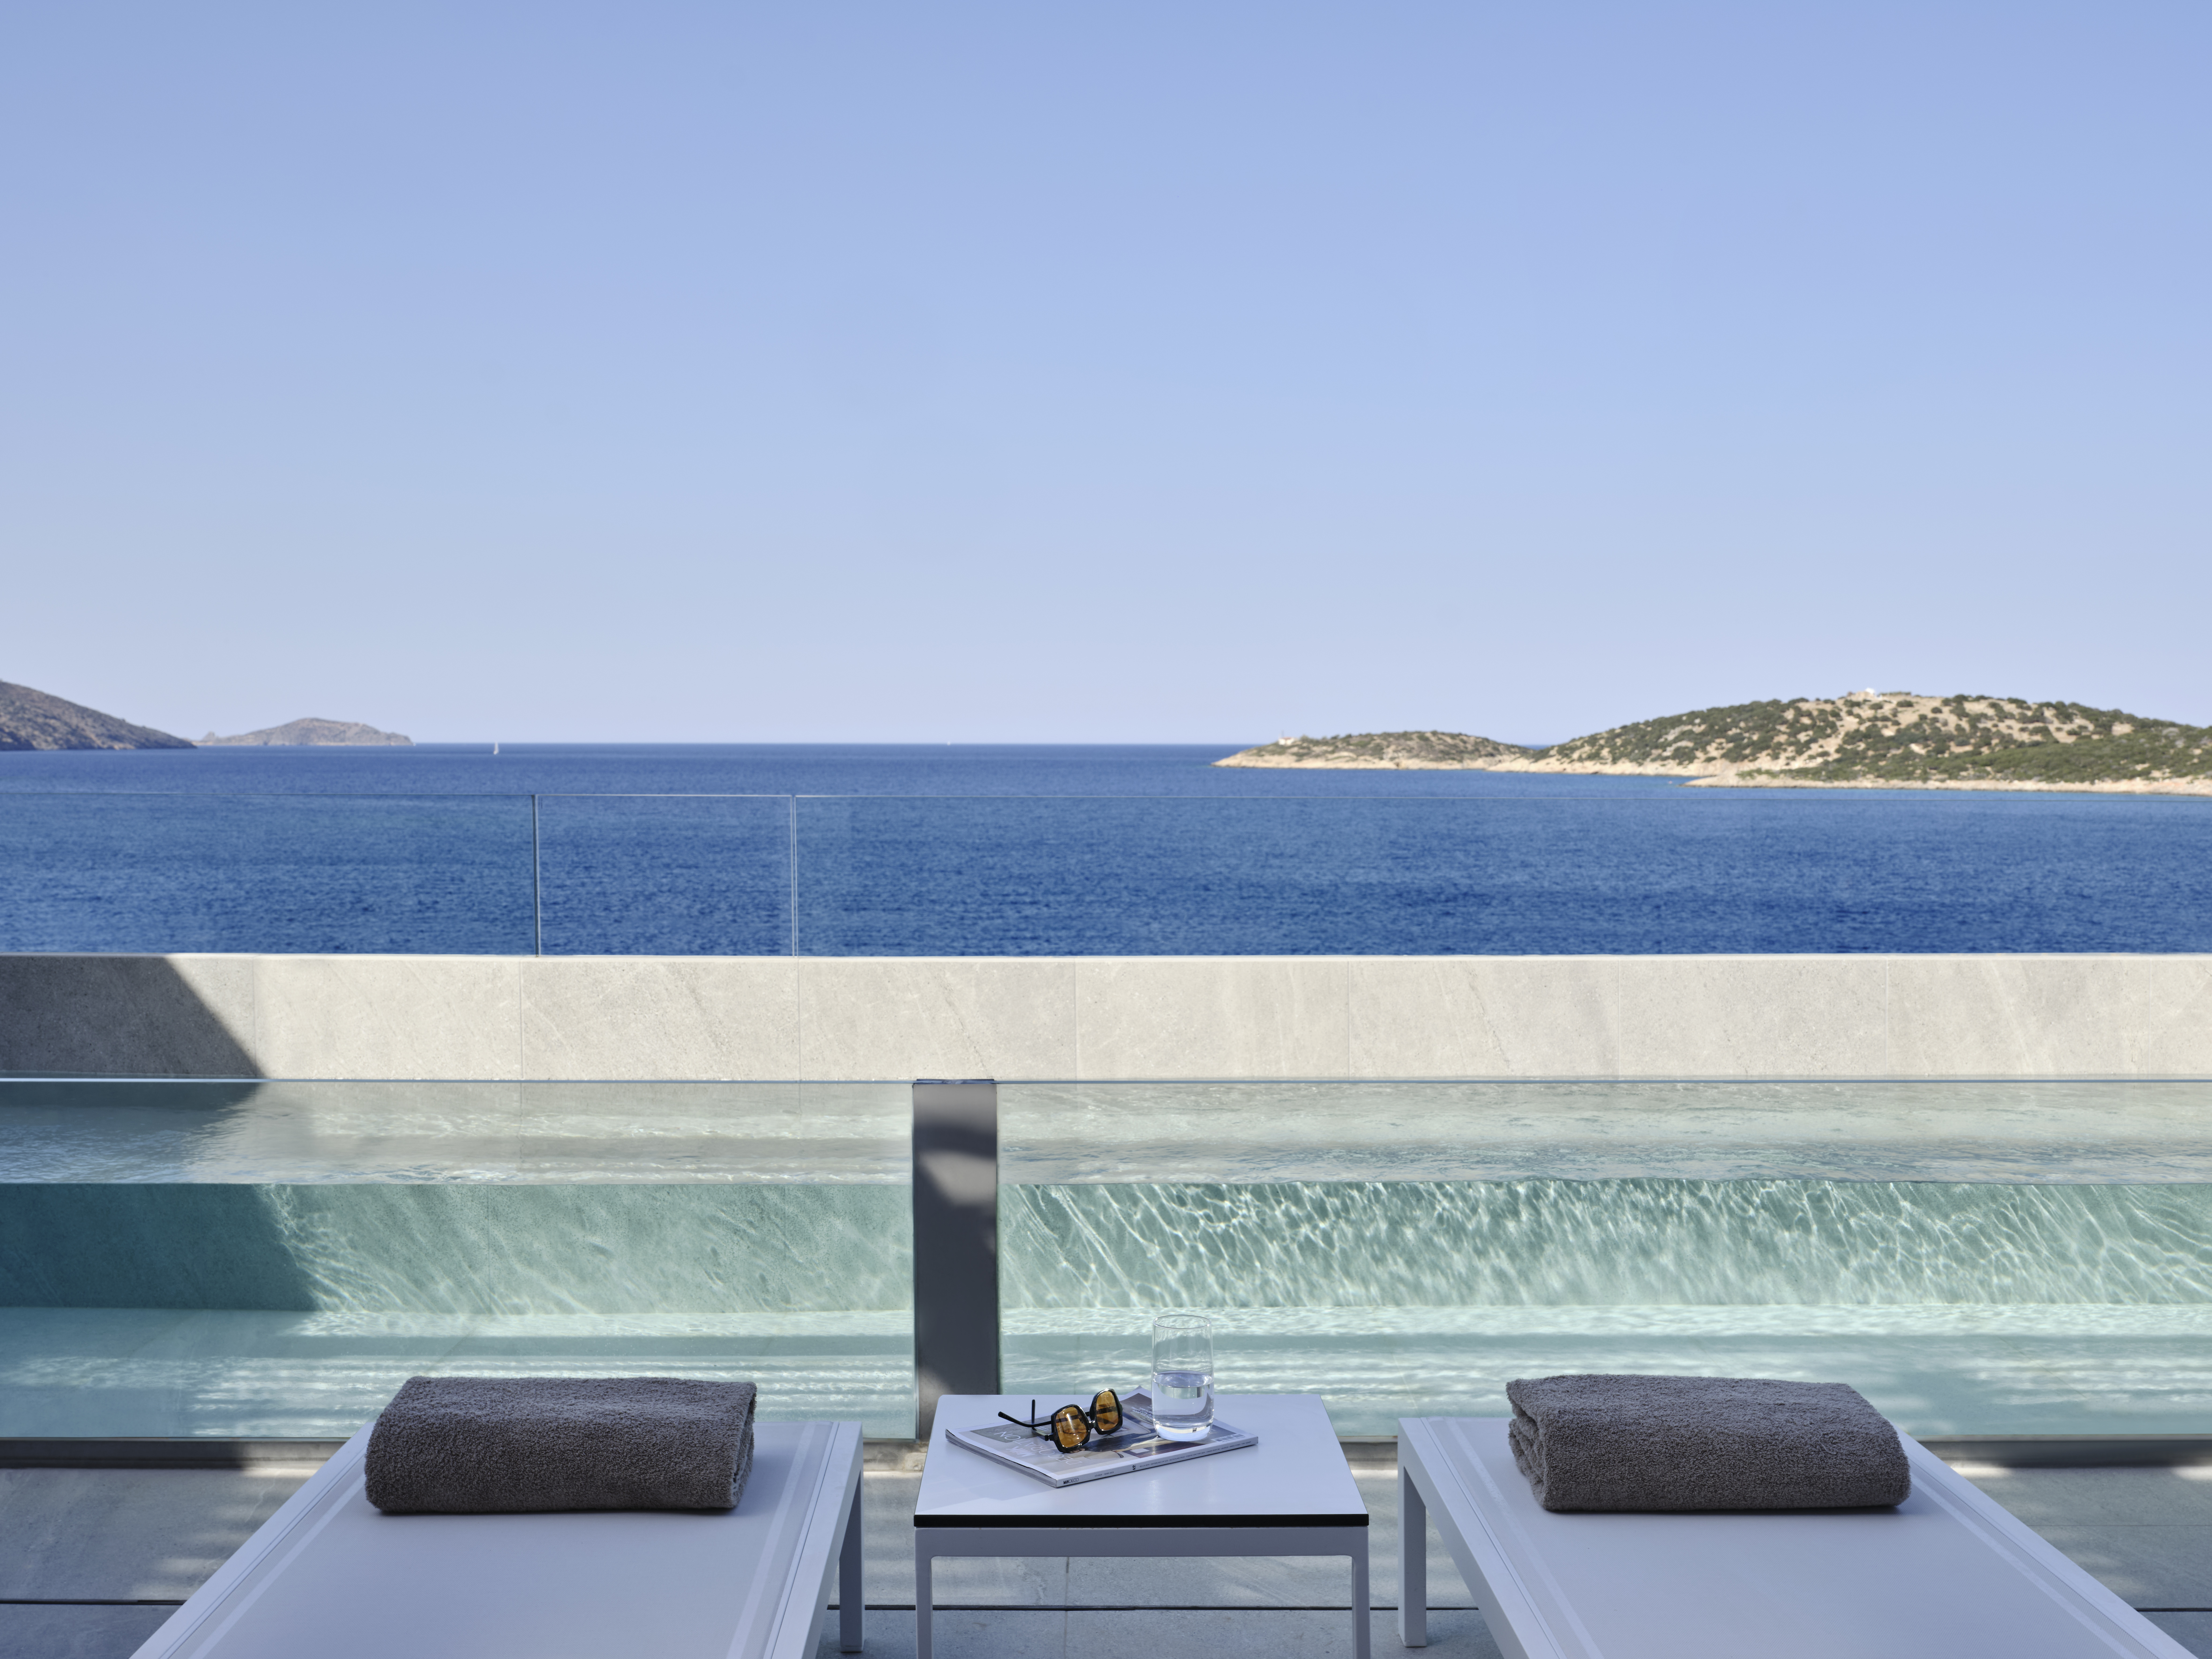 InterContinental eröffnet erstes Hotel auf den griechischen Inseln